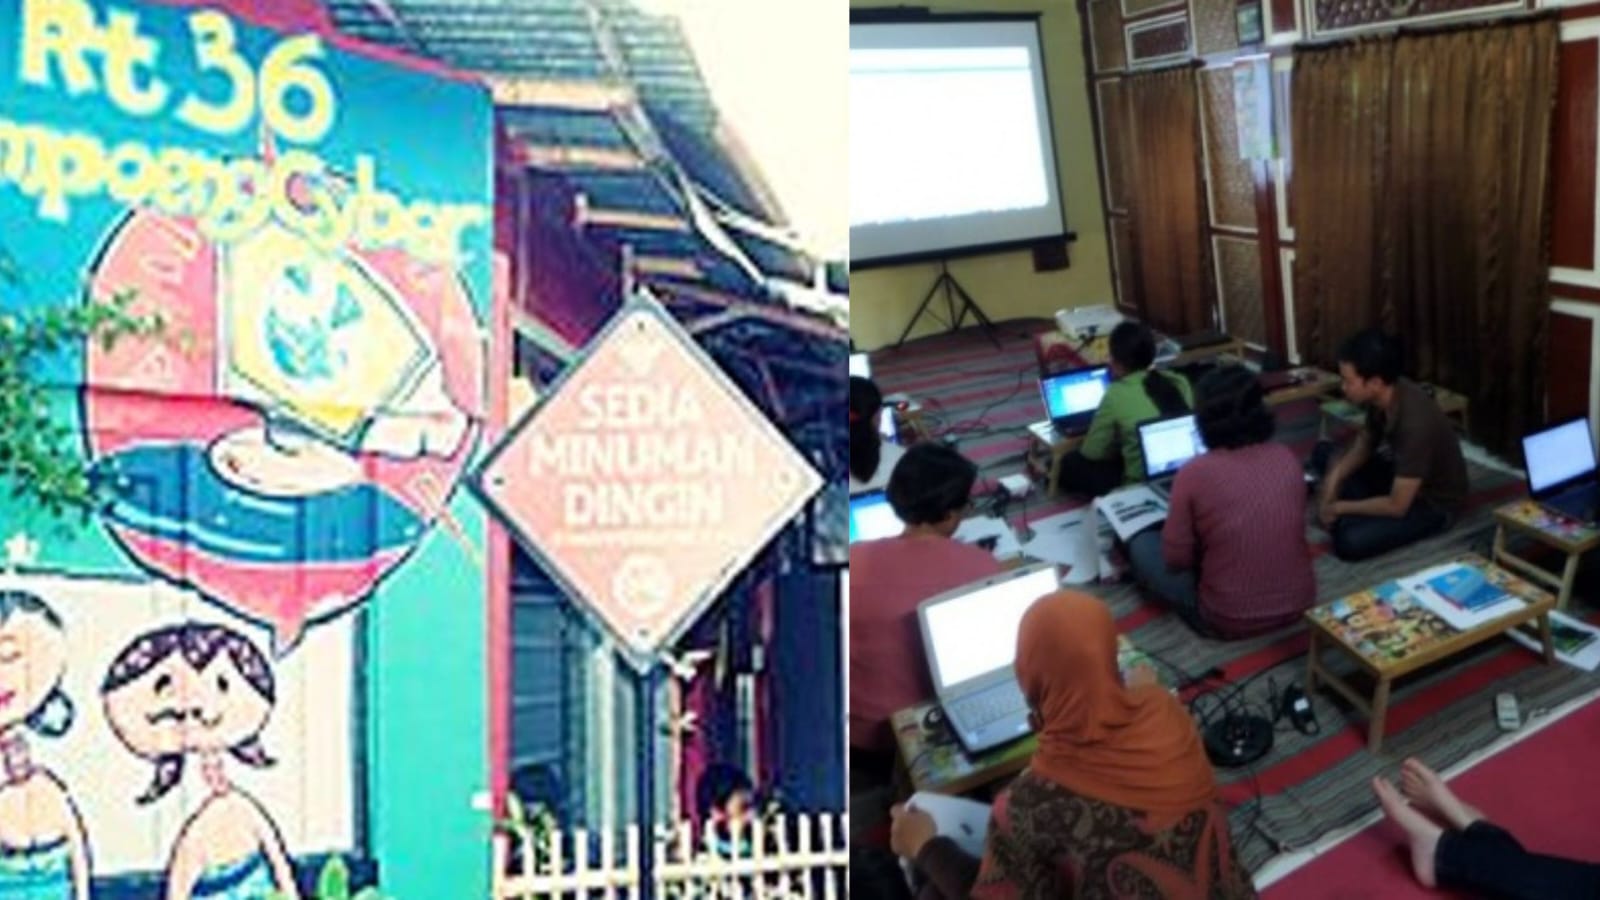 Sejarah, Profil, dan Visi Misi Kampung Cyber Yogyakarta, Melek Teknologi di Tengah Keindahan Taman Sari